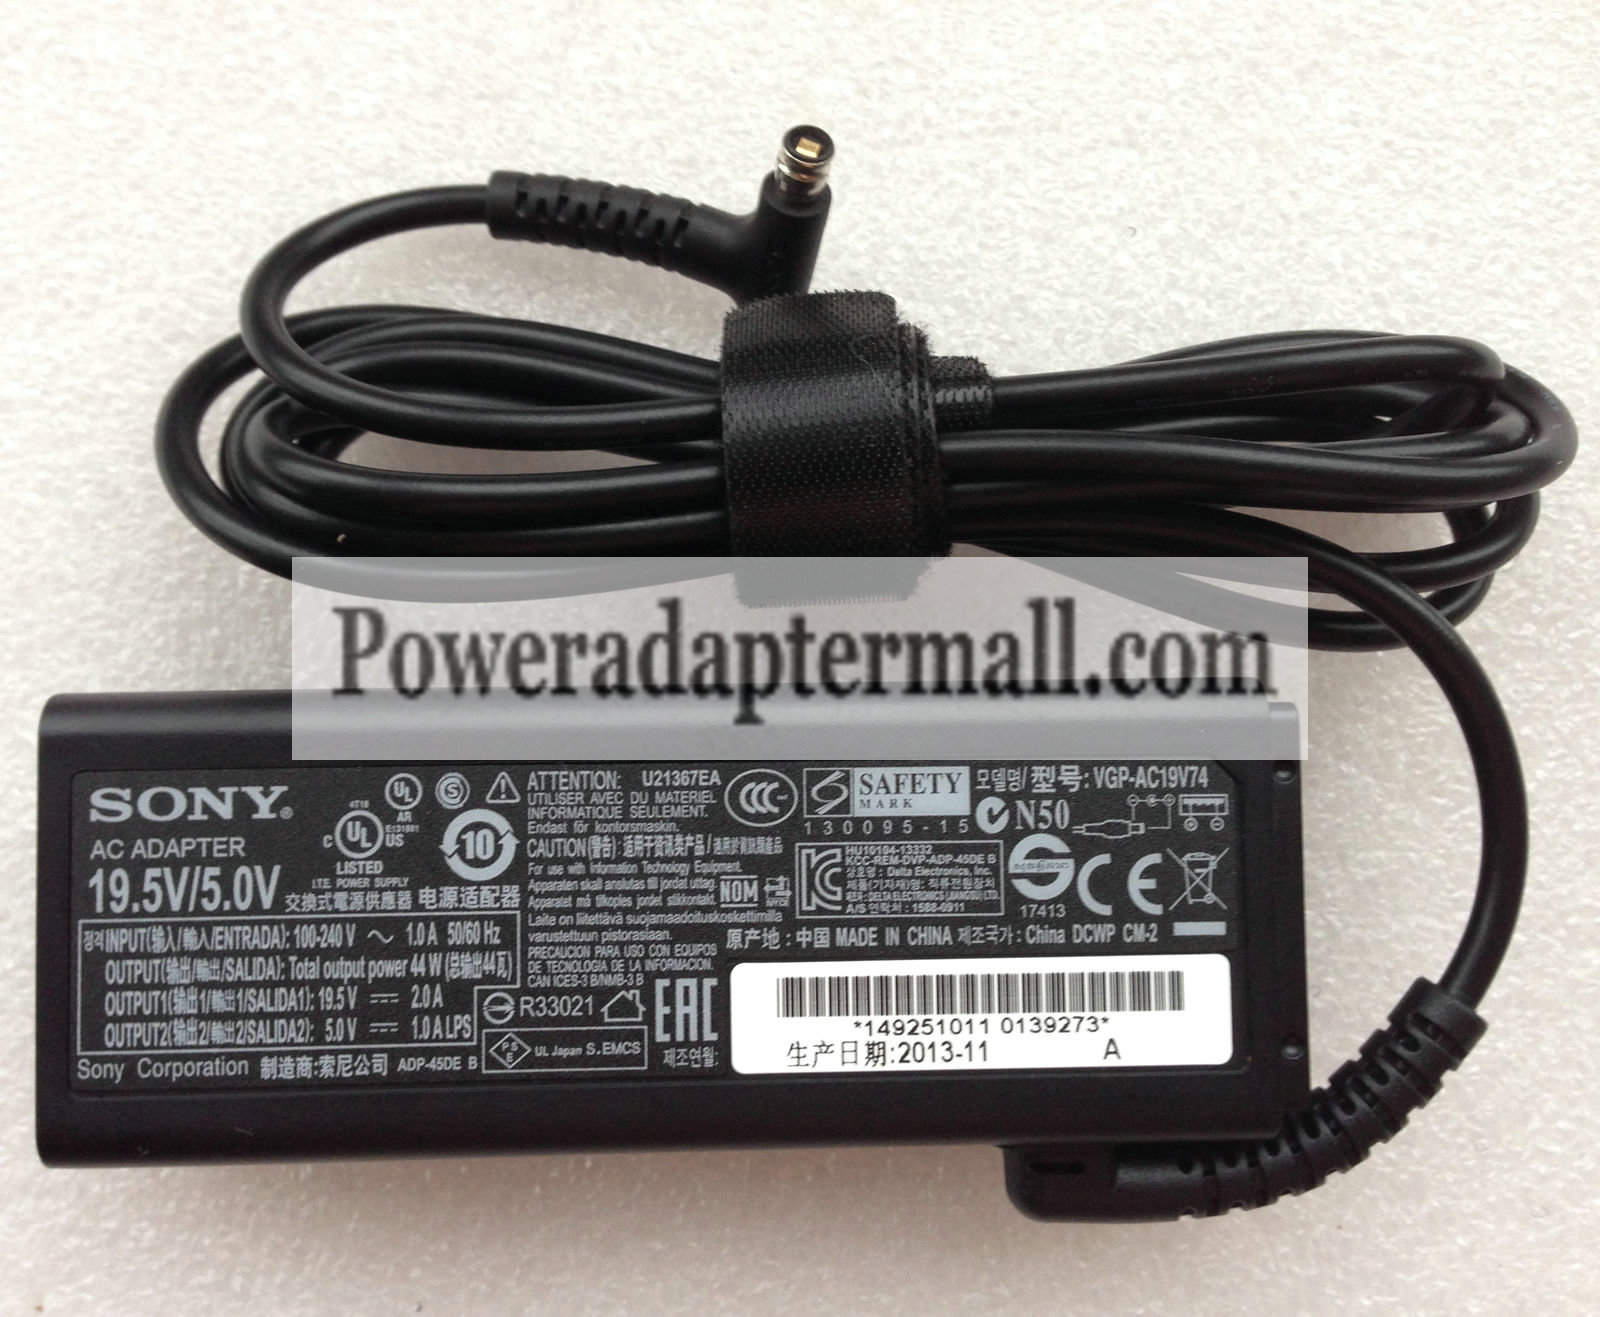 Original Sony VAIO Tap 11 SVT1122S9EB 19.5V/5.0A AC Adapter